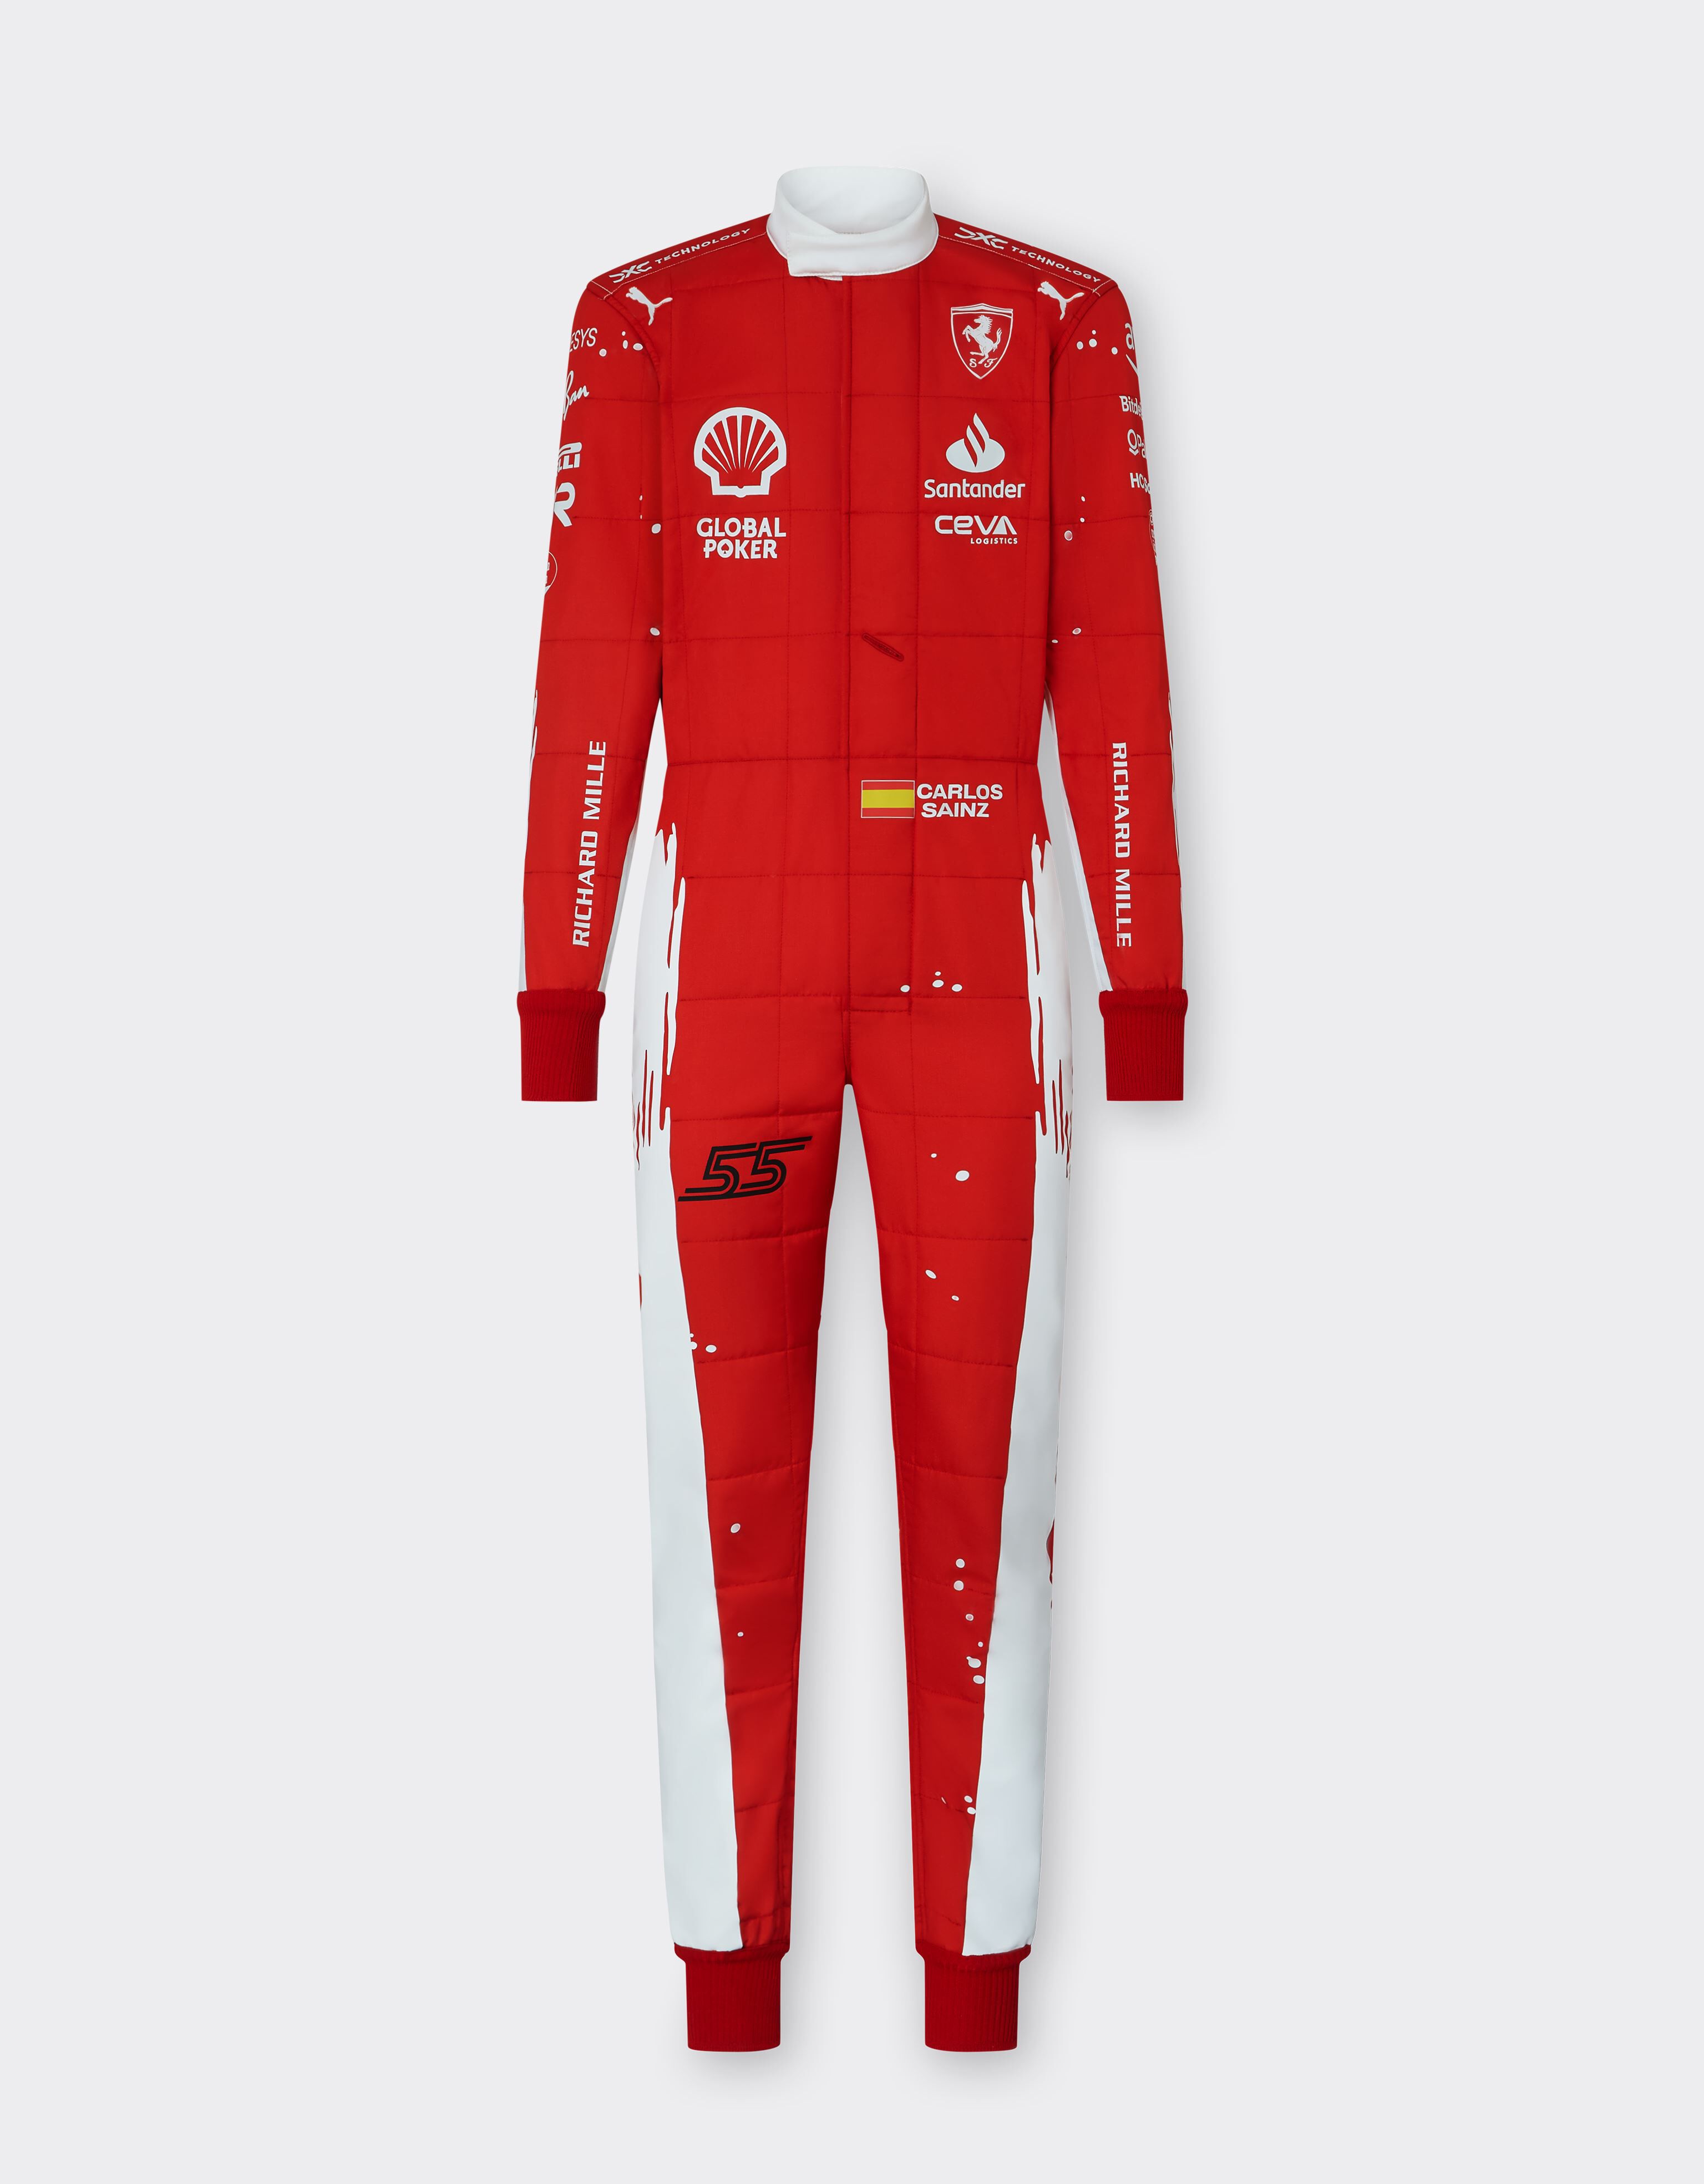 ${brand} Tuta F1 PRO Carlos Sainz Puma per Scuderia Ferrari - Joshua Vides ${colorDescription} ${masterID}